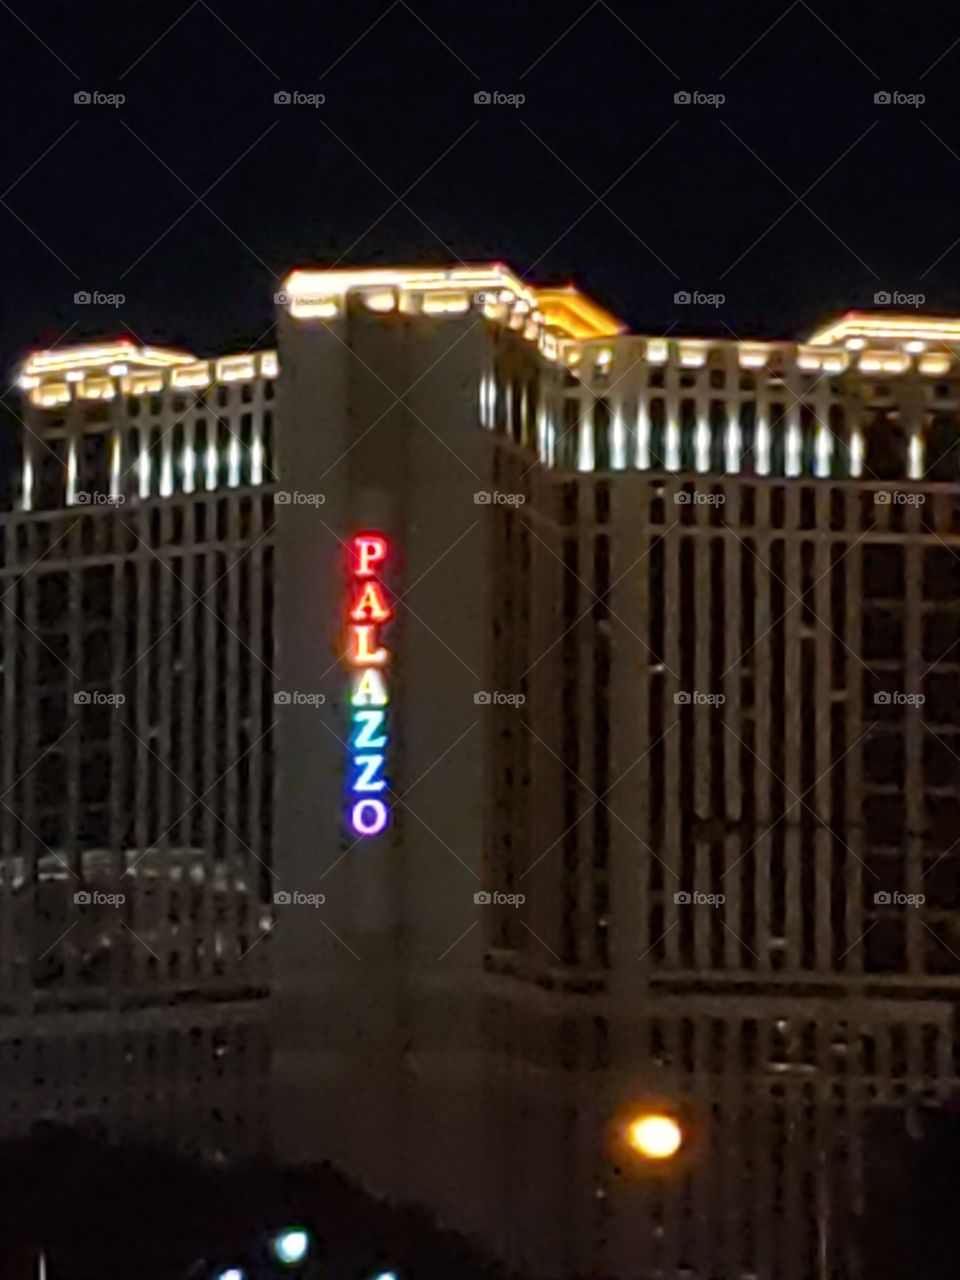 Some of the Las Vegas Pride this weekend in honor of pride weekend